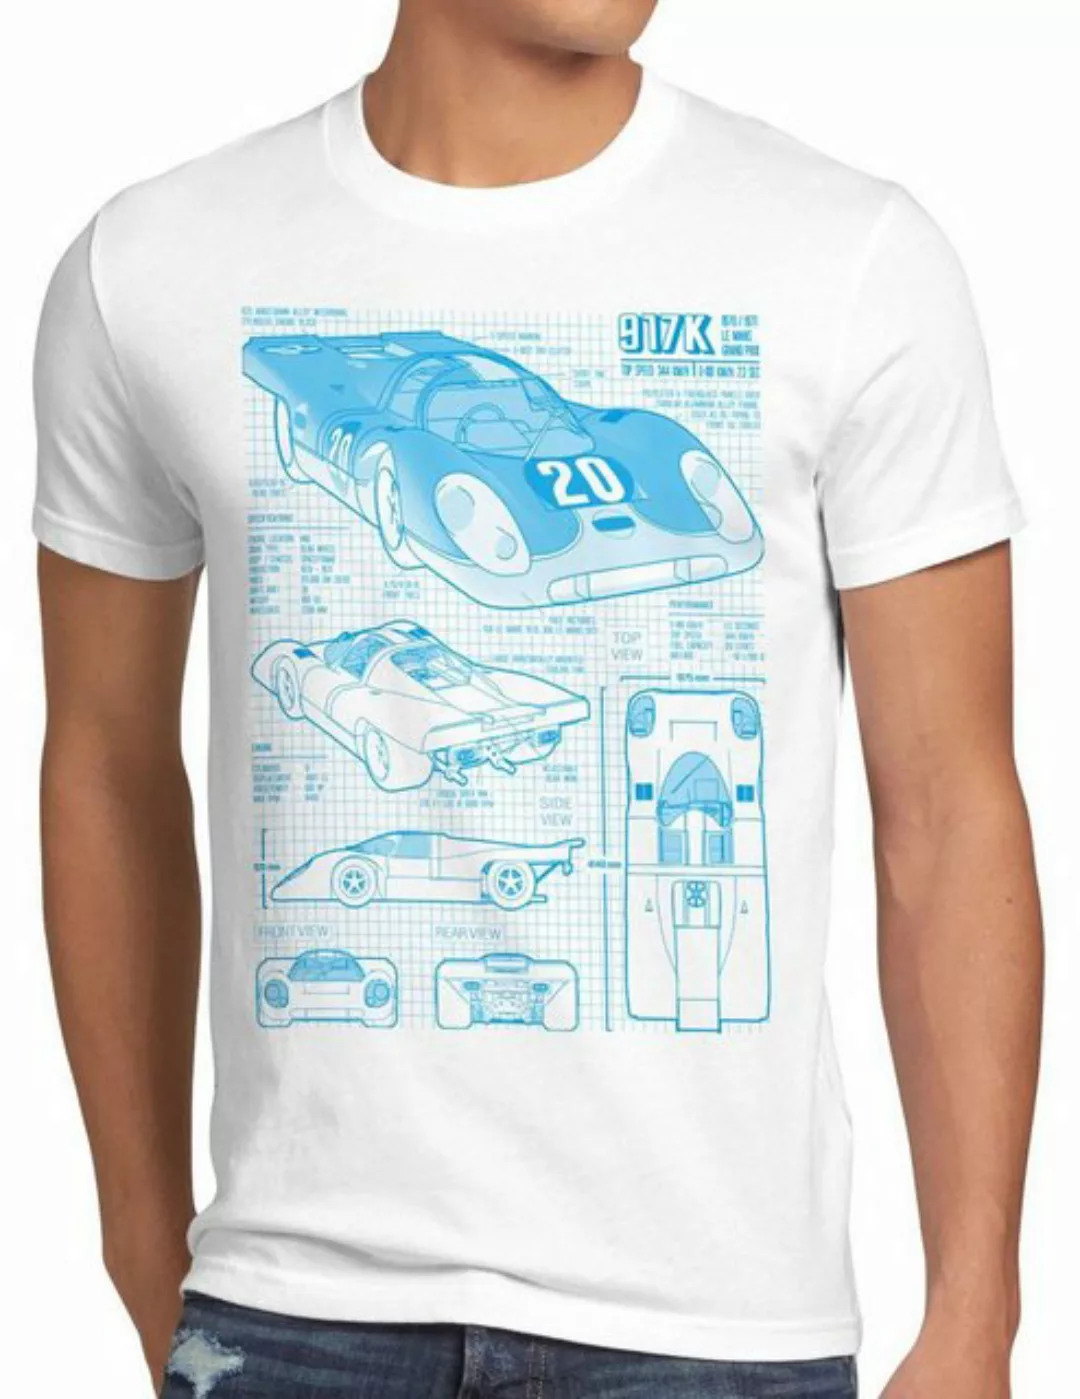 style3 Print-Shirt Herren T-Shirt 917K Le Mans 24stunden rennen 997 996 gt2 günstig online kaufen